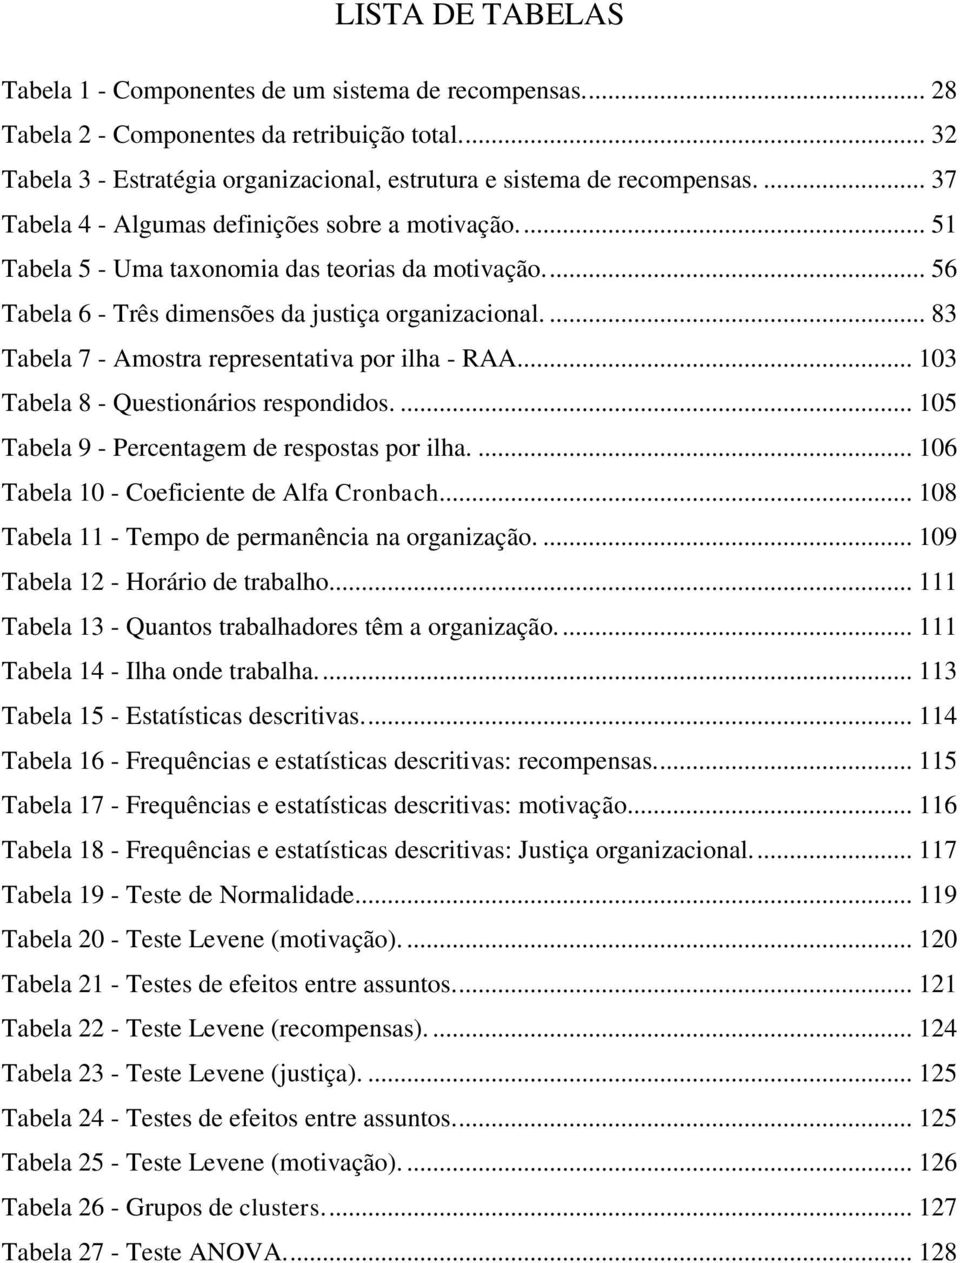 ... 83 Tabela 7 - Amostra representativa por ilha - RAA.... 103 Tabela 8 - Questionários respondidos.... 105 Tabela 9 - Percentagem de respostas por ilha.... 106 Tabela 10 - Coeficiente de Alfa Cronbach.